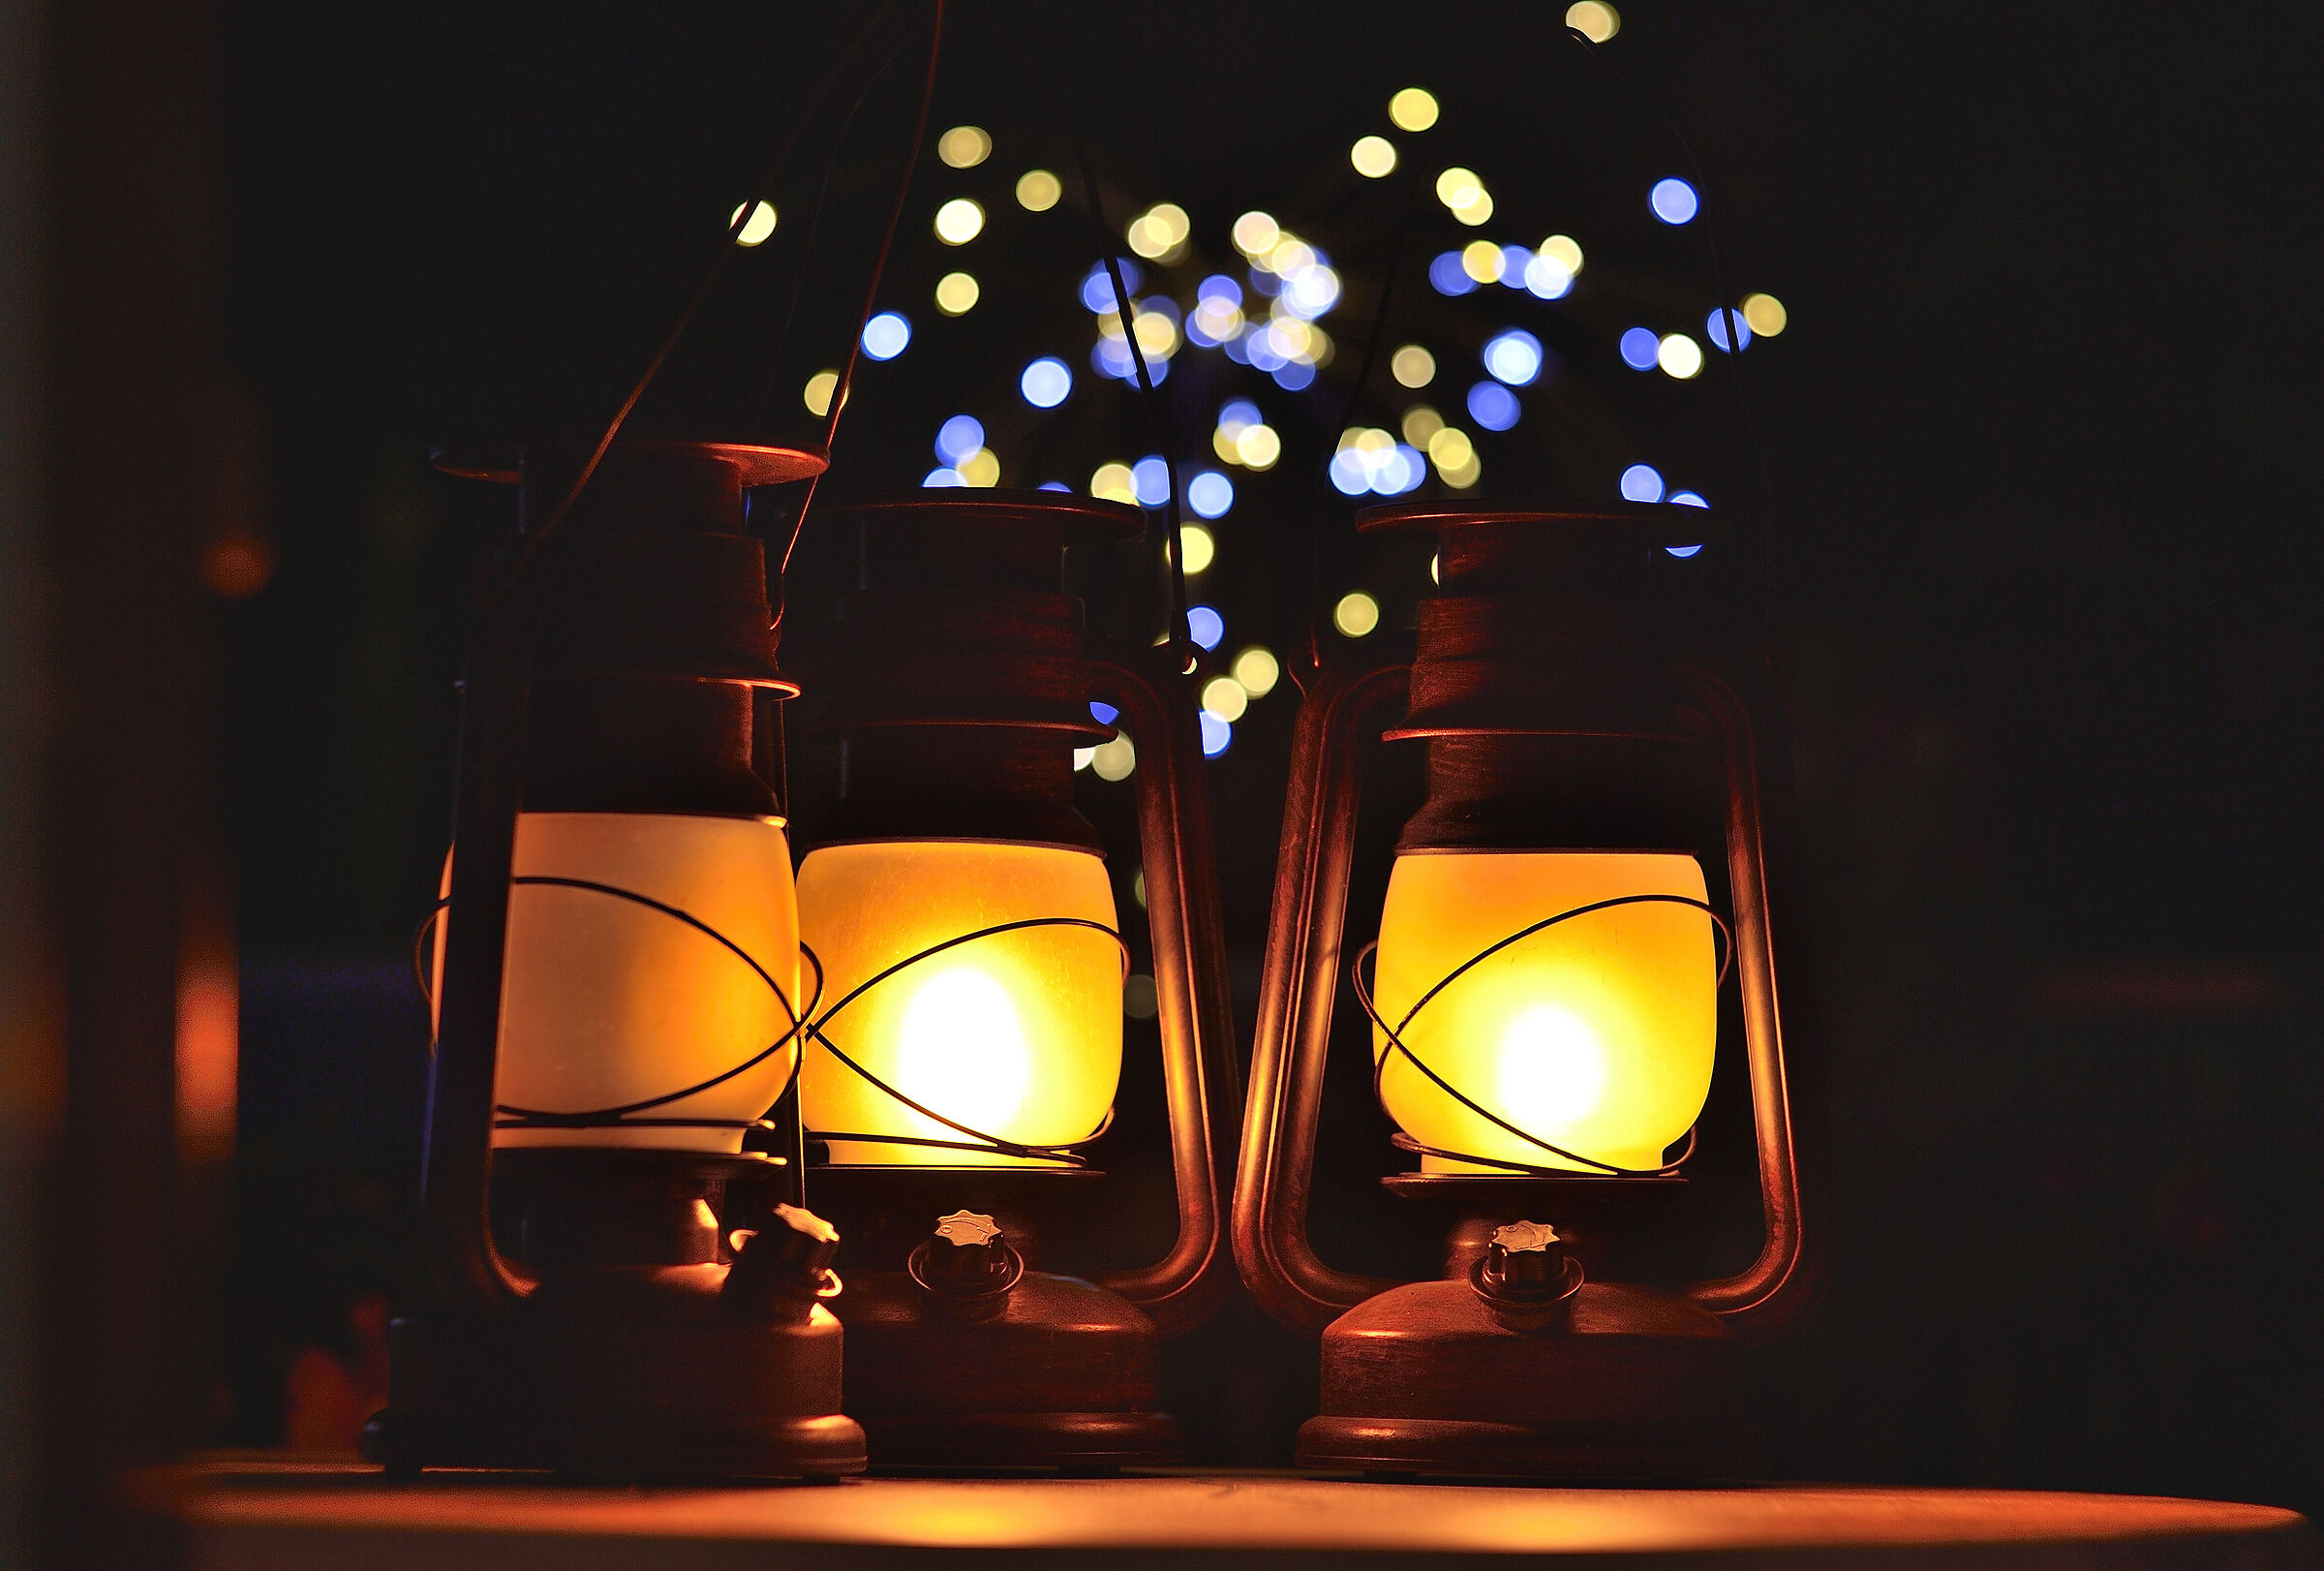 Fireflies and Lanterns...